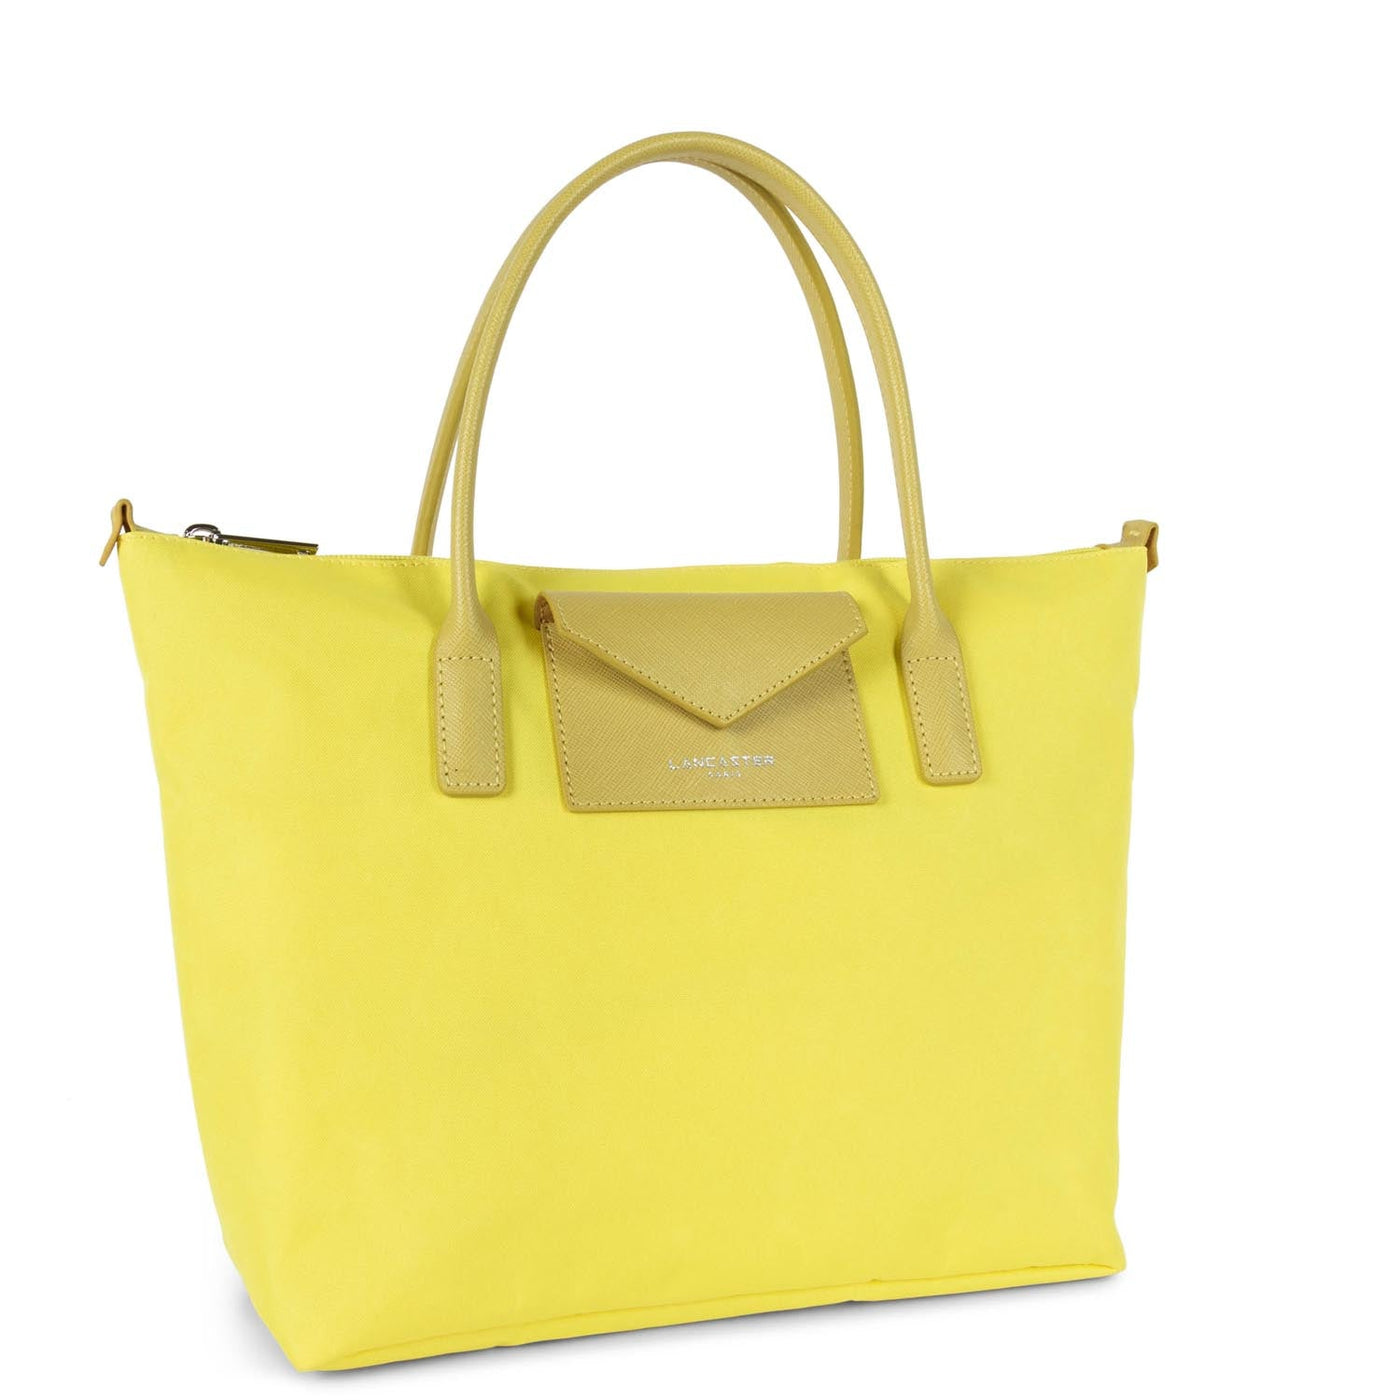 m tote bag - smart kba #couleur_citron